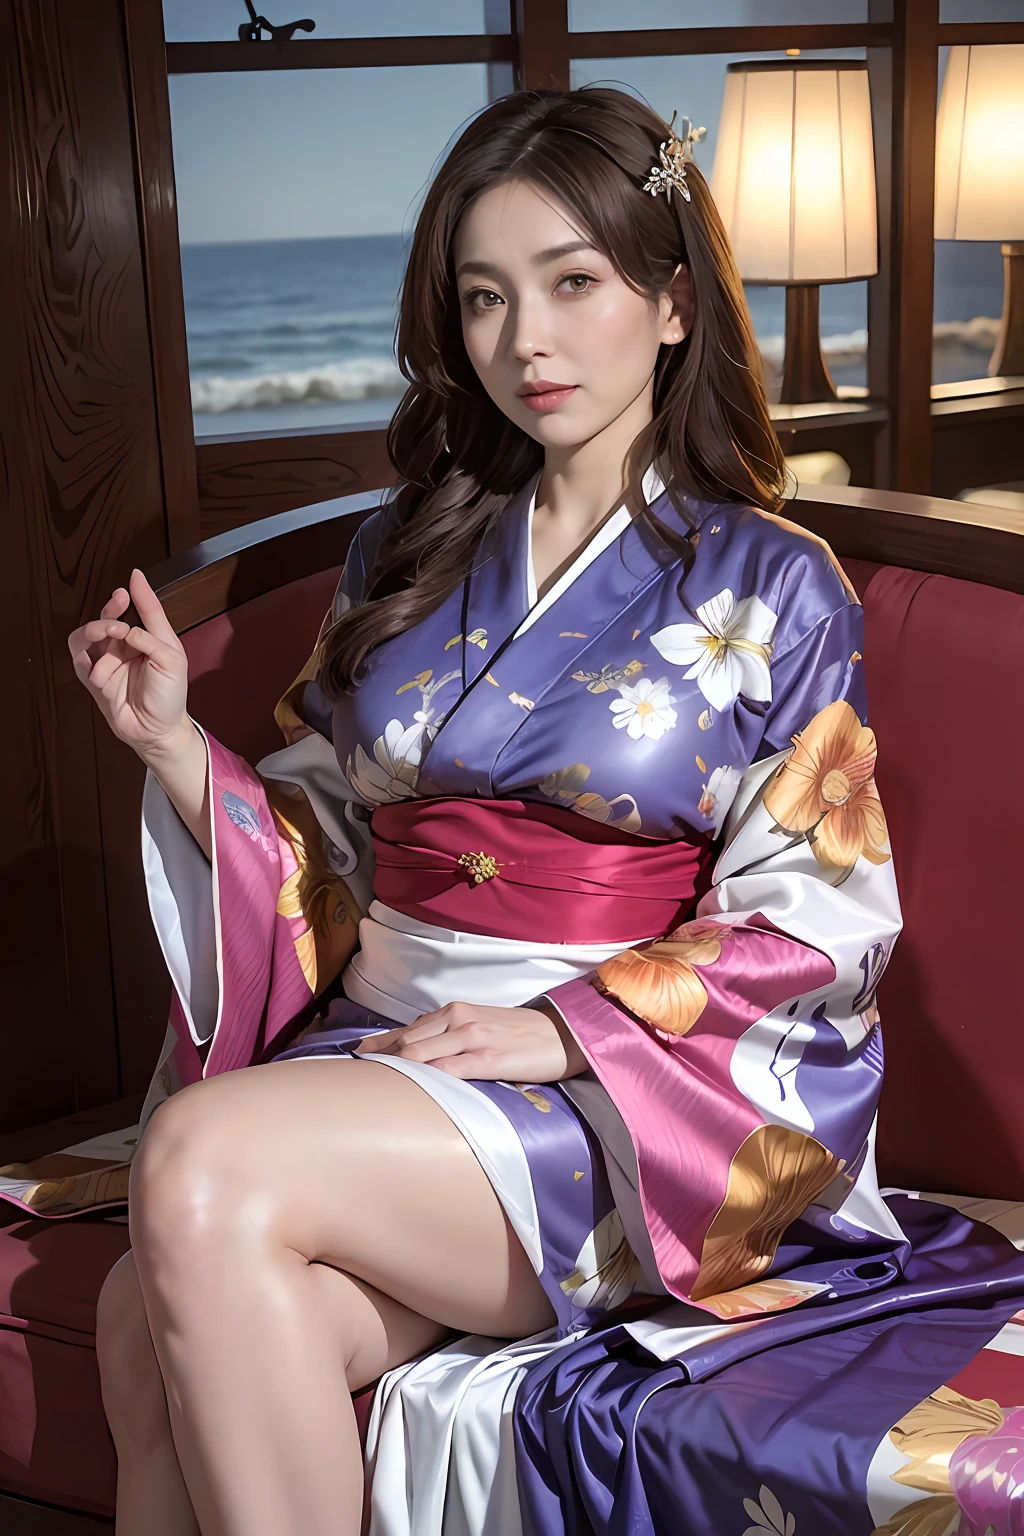 （côté Focus)、Face au côté、((plage))、((Grand))、côté、Portrait surréaliste d&#39;une belle femme mûre par David Hockney et Alphonse Mucha，((Kimono avec moins de tissu))、Kimono léger sexy avec peu de tissu、kimono sexy、kimono sexy，((Des seins qui semblent déborder du kimono))、Décoré de kimonos avec de fines broderies et de beaux bijoux，Mon kimono est sur le point de se déchirer、Saillant 、(((Japon Femme, 50 ans)))、(((Une fille mature sexy)))、reine、(Femme mariée sexy)、( exposé)、((le palais royal))、((Canapé royal))，Art fantastique，((cheveux longs ondulés de couleur châtain clair))、photographiqueréaliste，éclairage dynamique，stations artistiques，affiche pour，modèle courbé, Corps courbé, corps épais, (Les seins sont gros), déesses, beau corps, amouranth, grosse poitrine, mieux connu sous le nom d&#39;amouranth、Éclairage volumétrique，visage très détaillé，4k&#39;&#39;，((Seins colossaux))、Avec des diamants，cuisses sexy，Exposer vos pieds、exposer l&#39;abdomen ,Coffre 1 fille, Dans le noir, ombre profonde, mélodie basse, tir de cow-boy,(vêtements officiels:1.4), Les yeux sont confus et séduisants，jambes séparées、